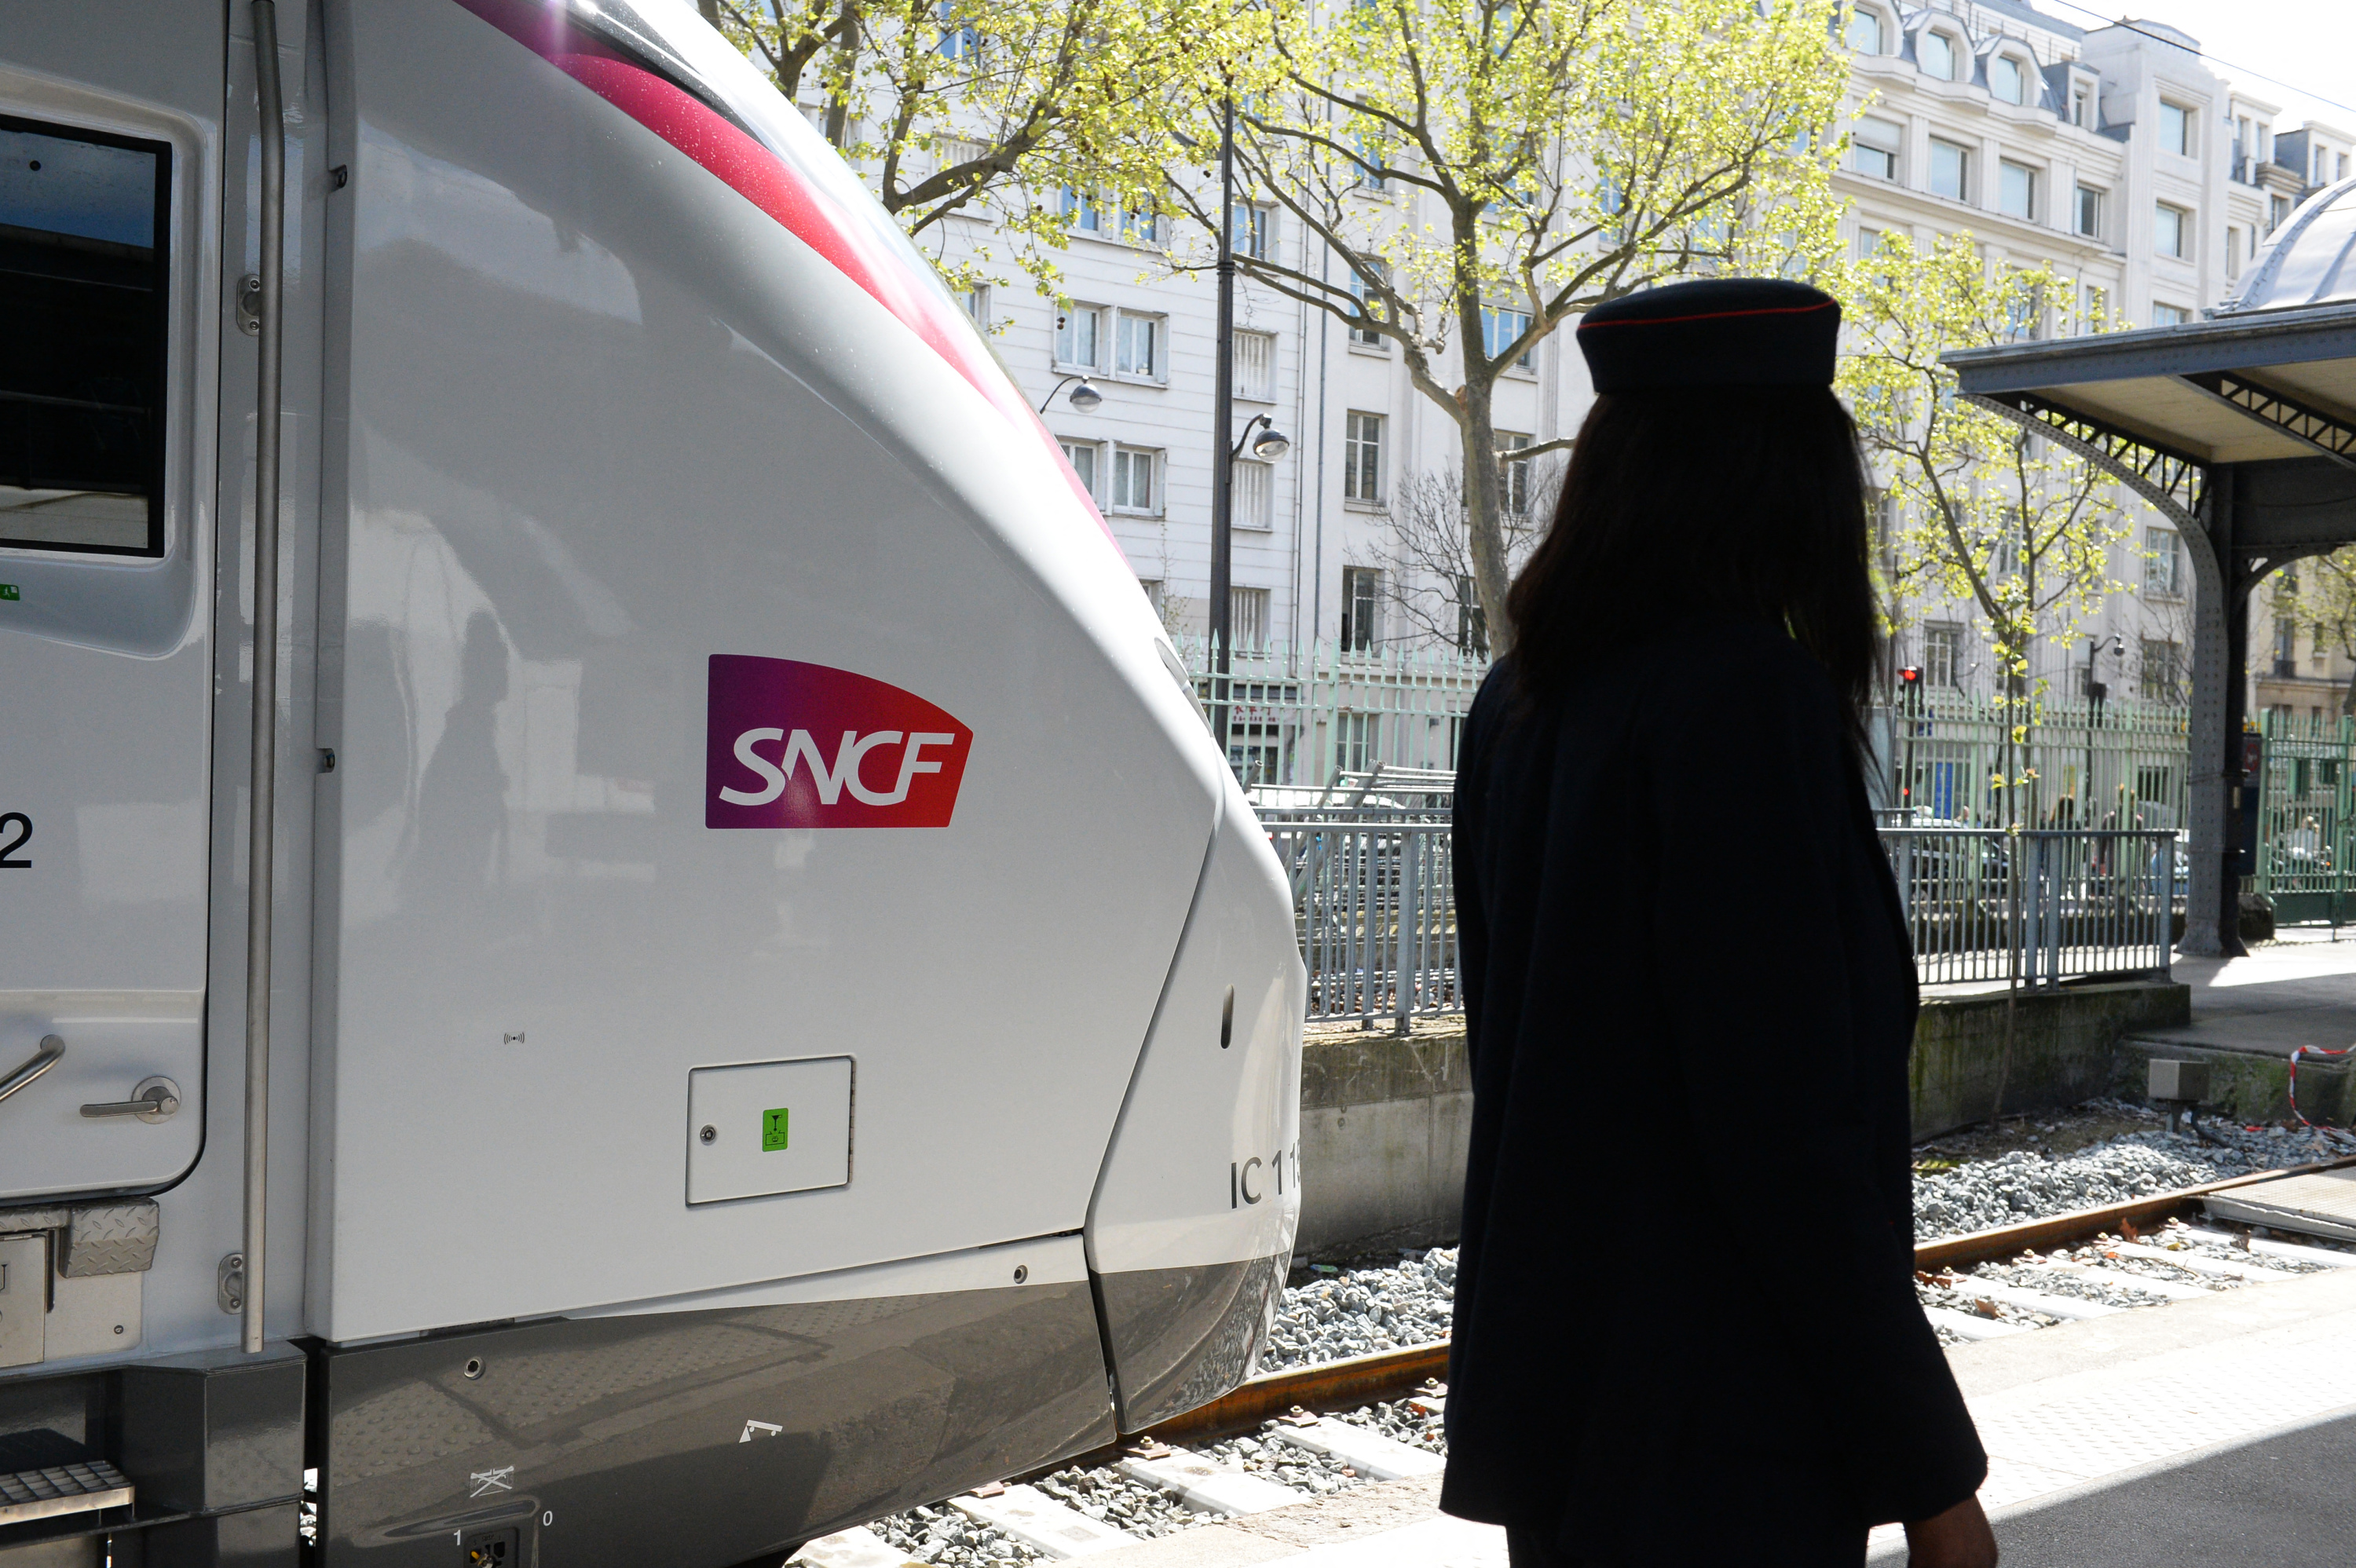 Un train Intercités Paris-Briançon arrive avec 11 heures de retard, la SNCF admet des conditions de voyage éprouvantes